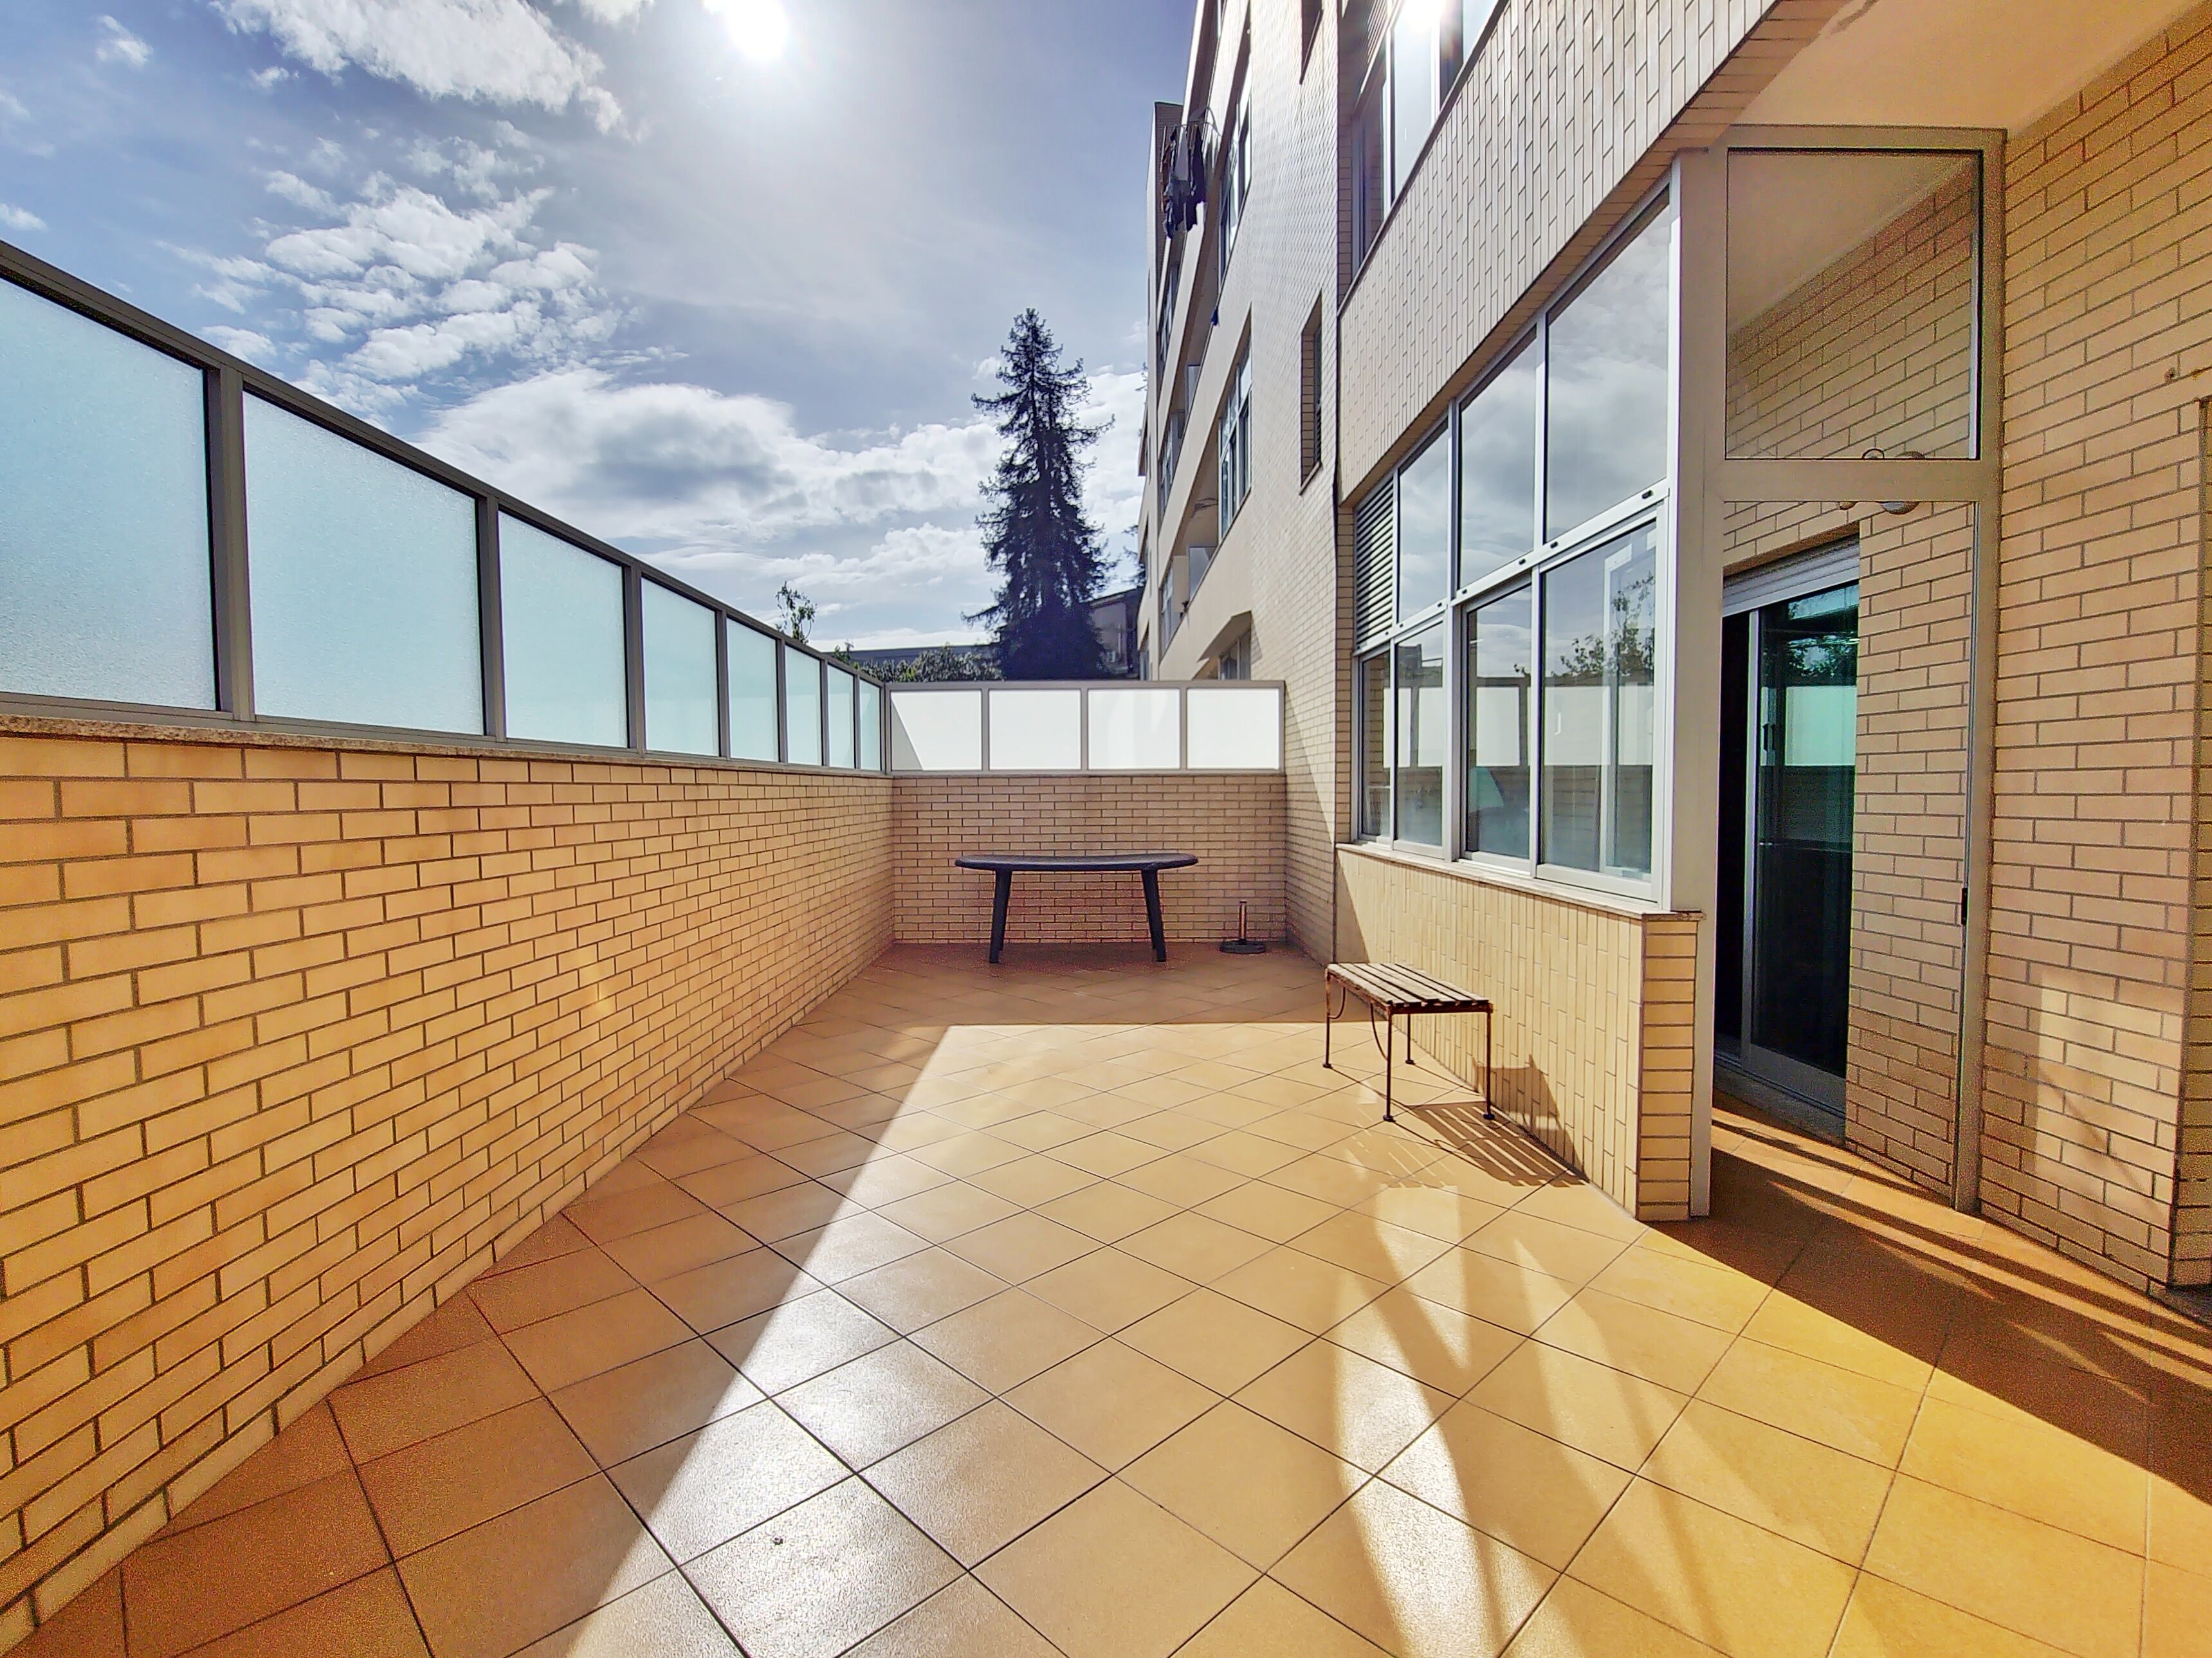 Apartamento T1 localizado em zona privilegiada Rio tinto / terraço /excelente exposição Solar